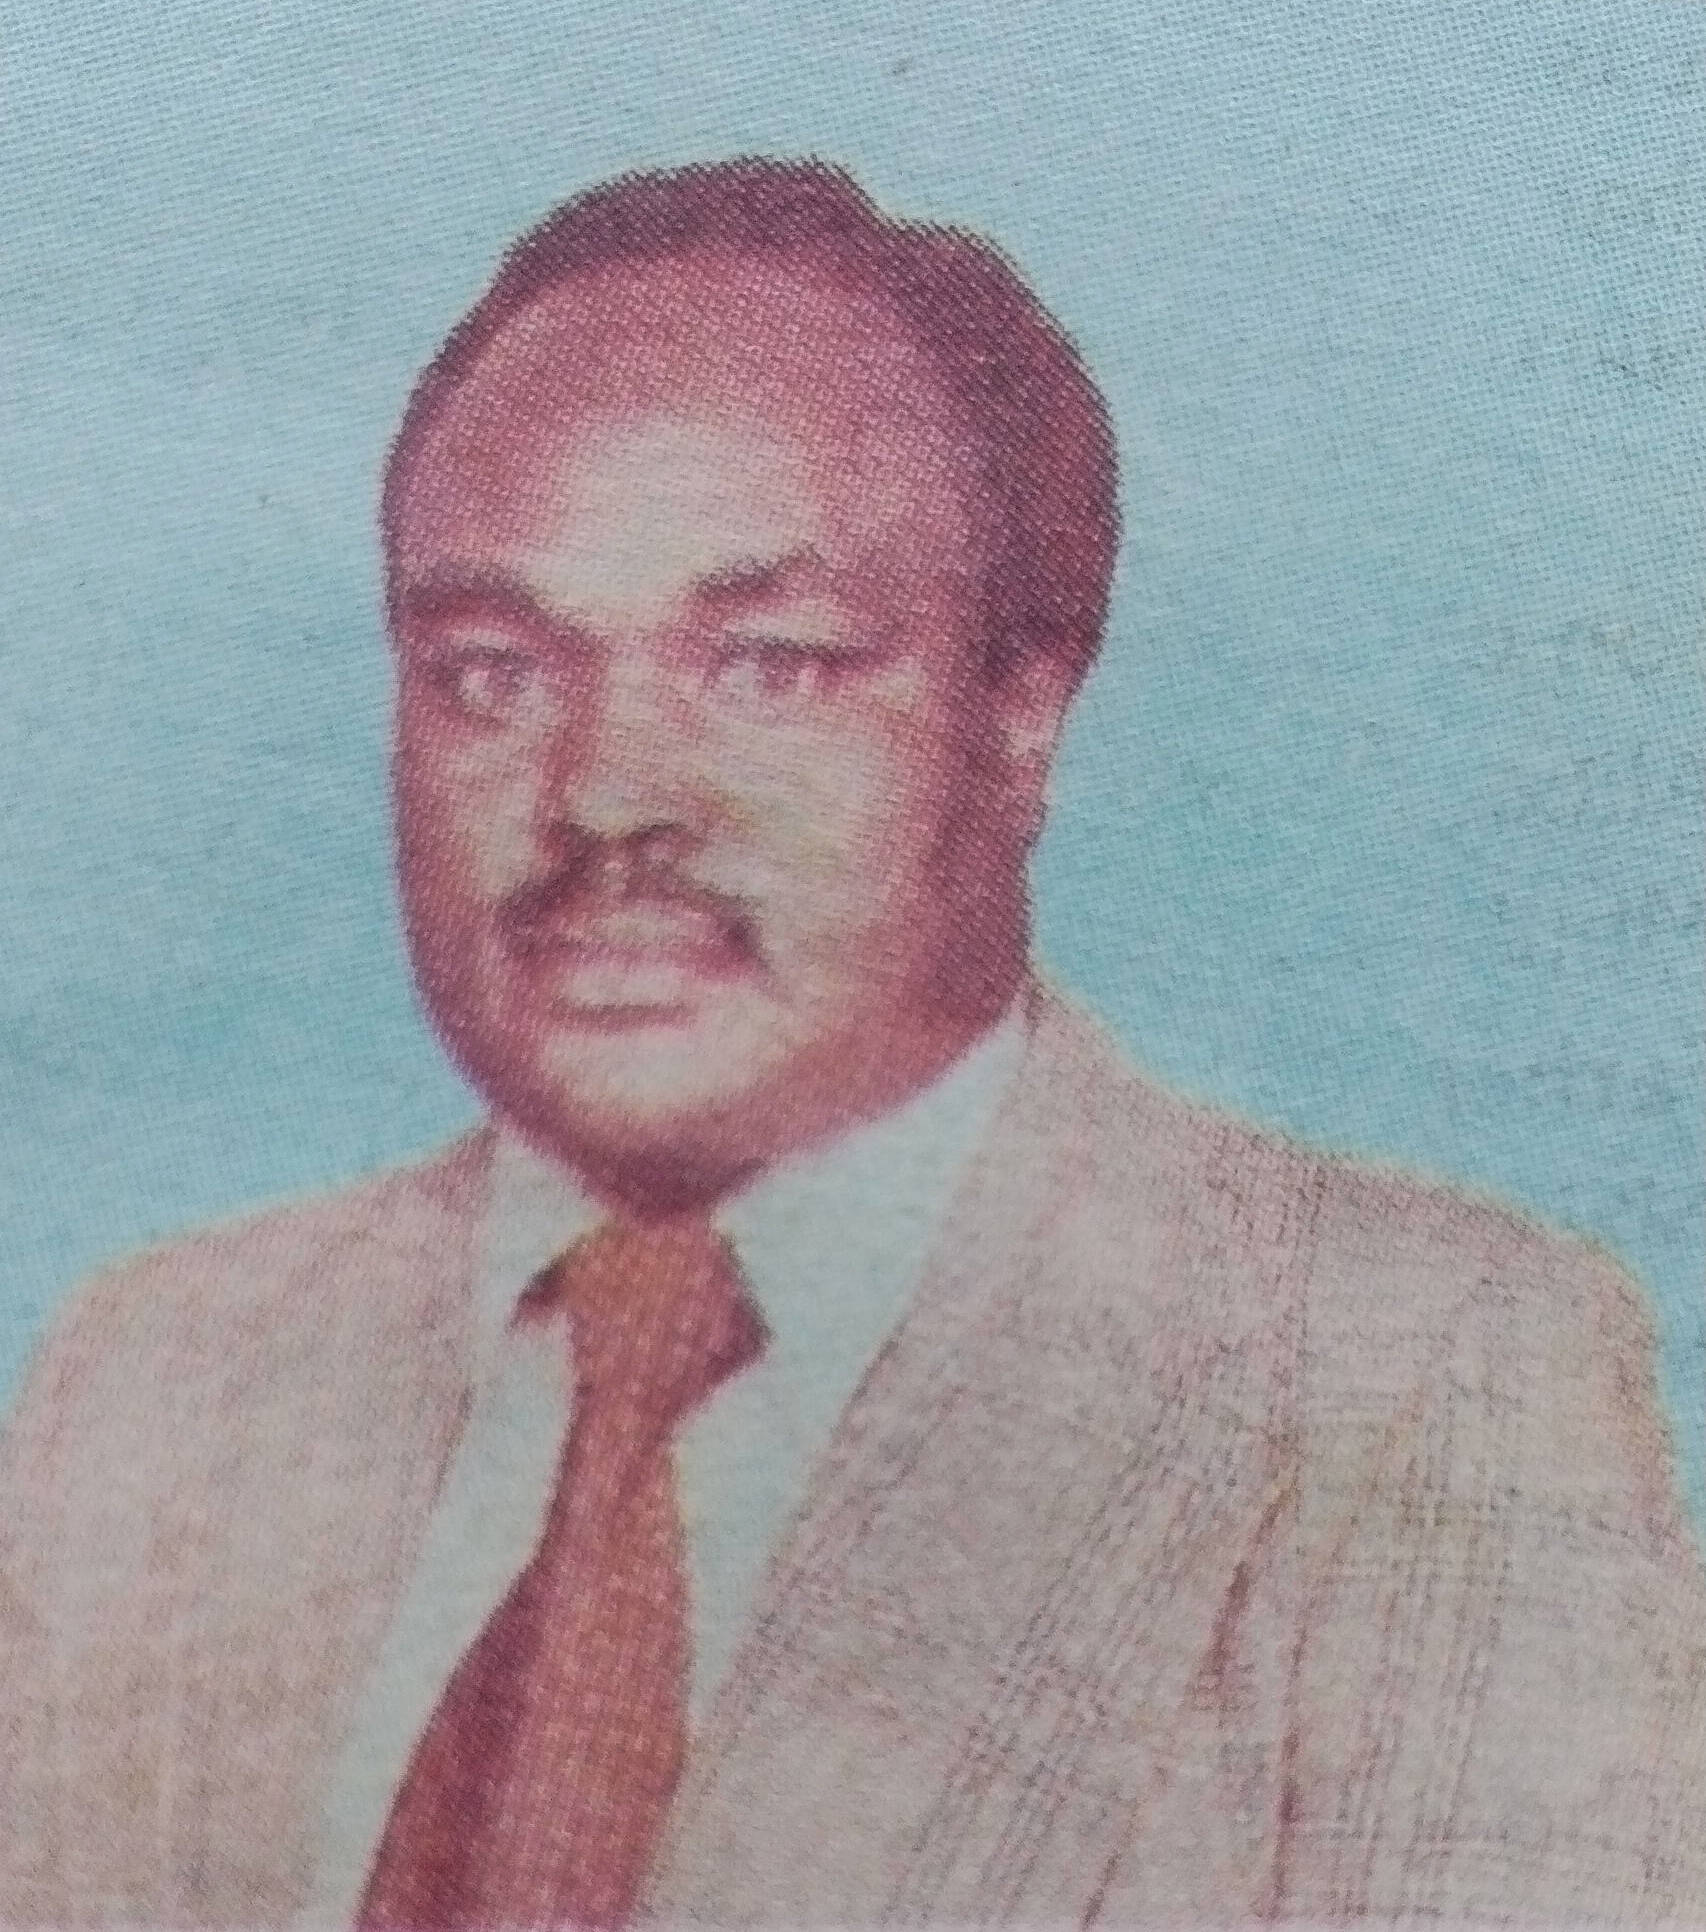 Obituary Image of Abel Nyambati Bigogo